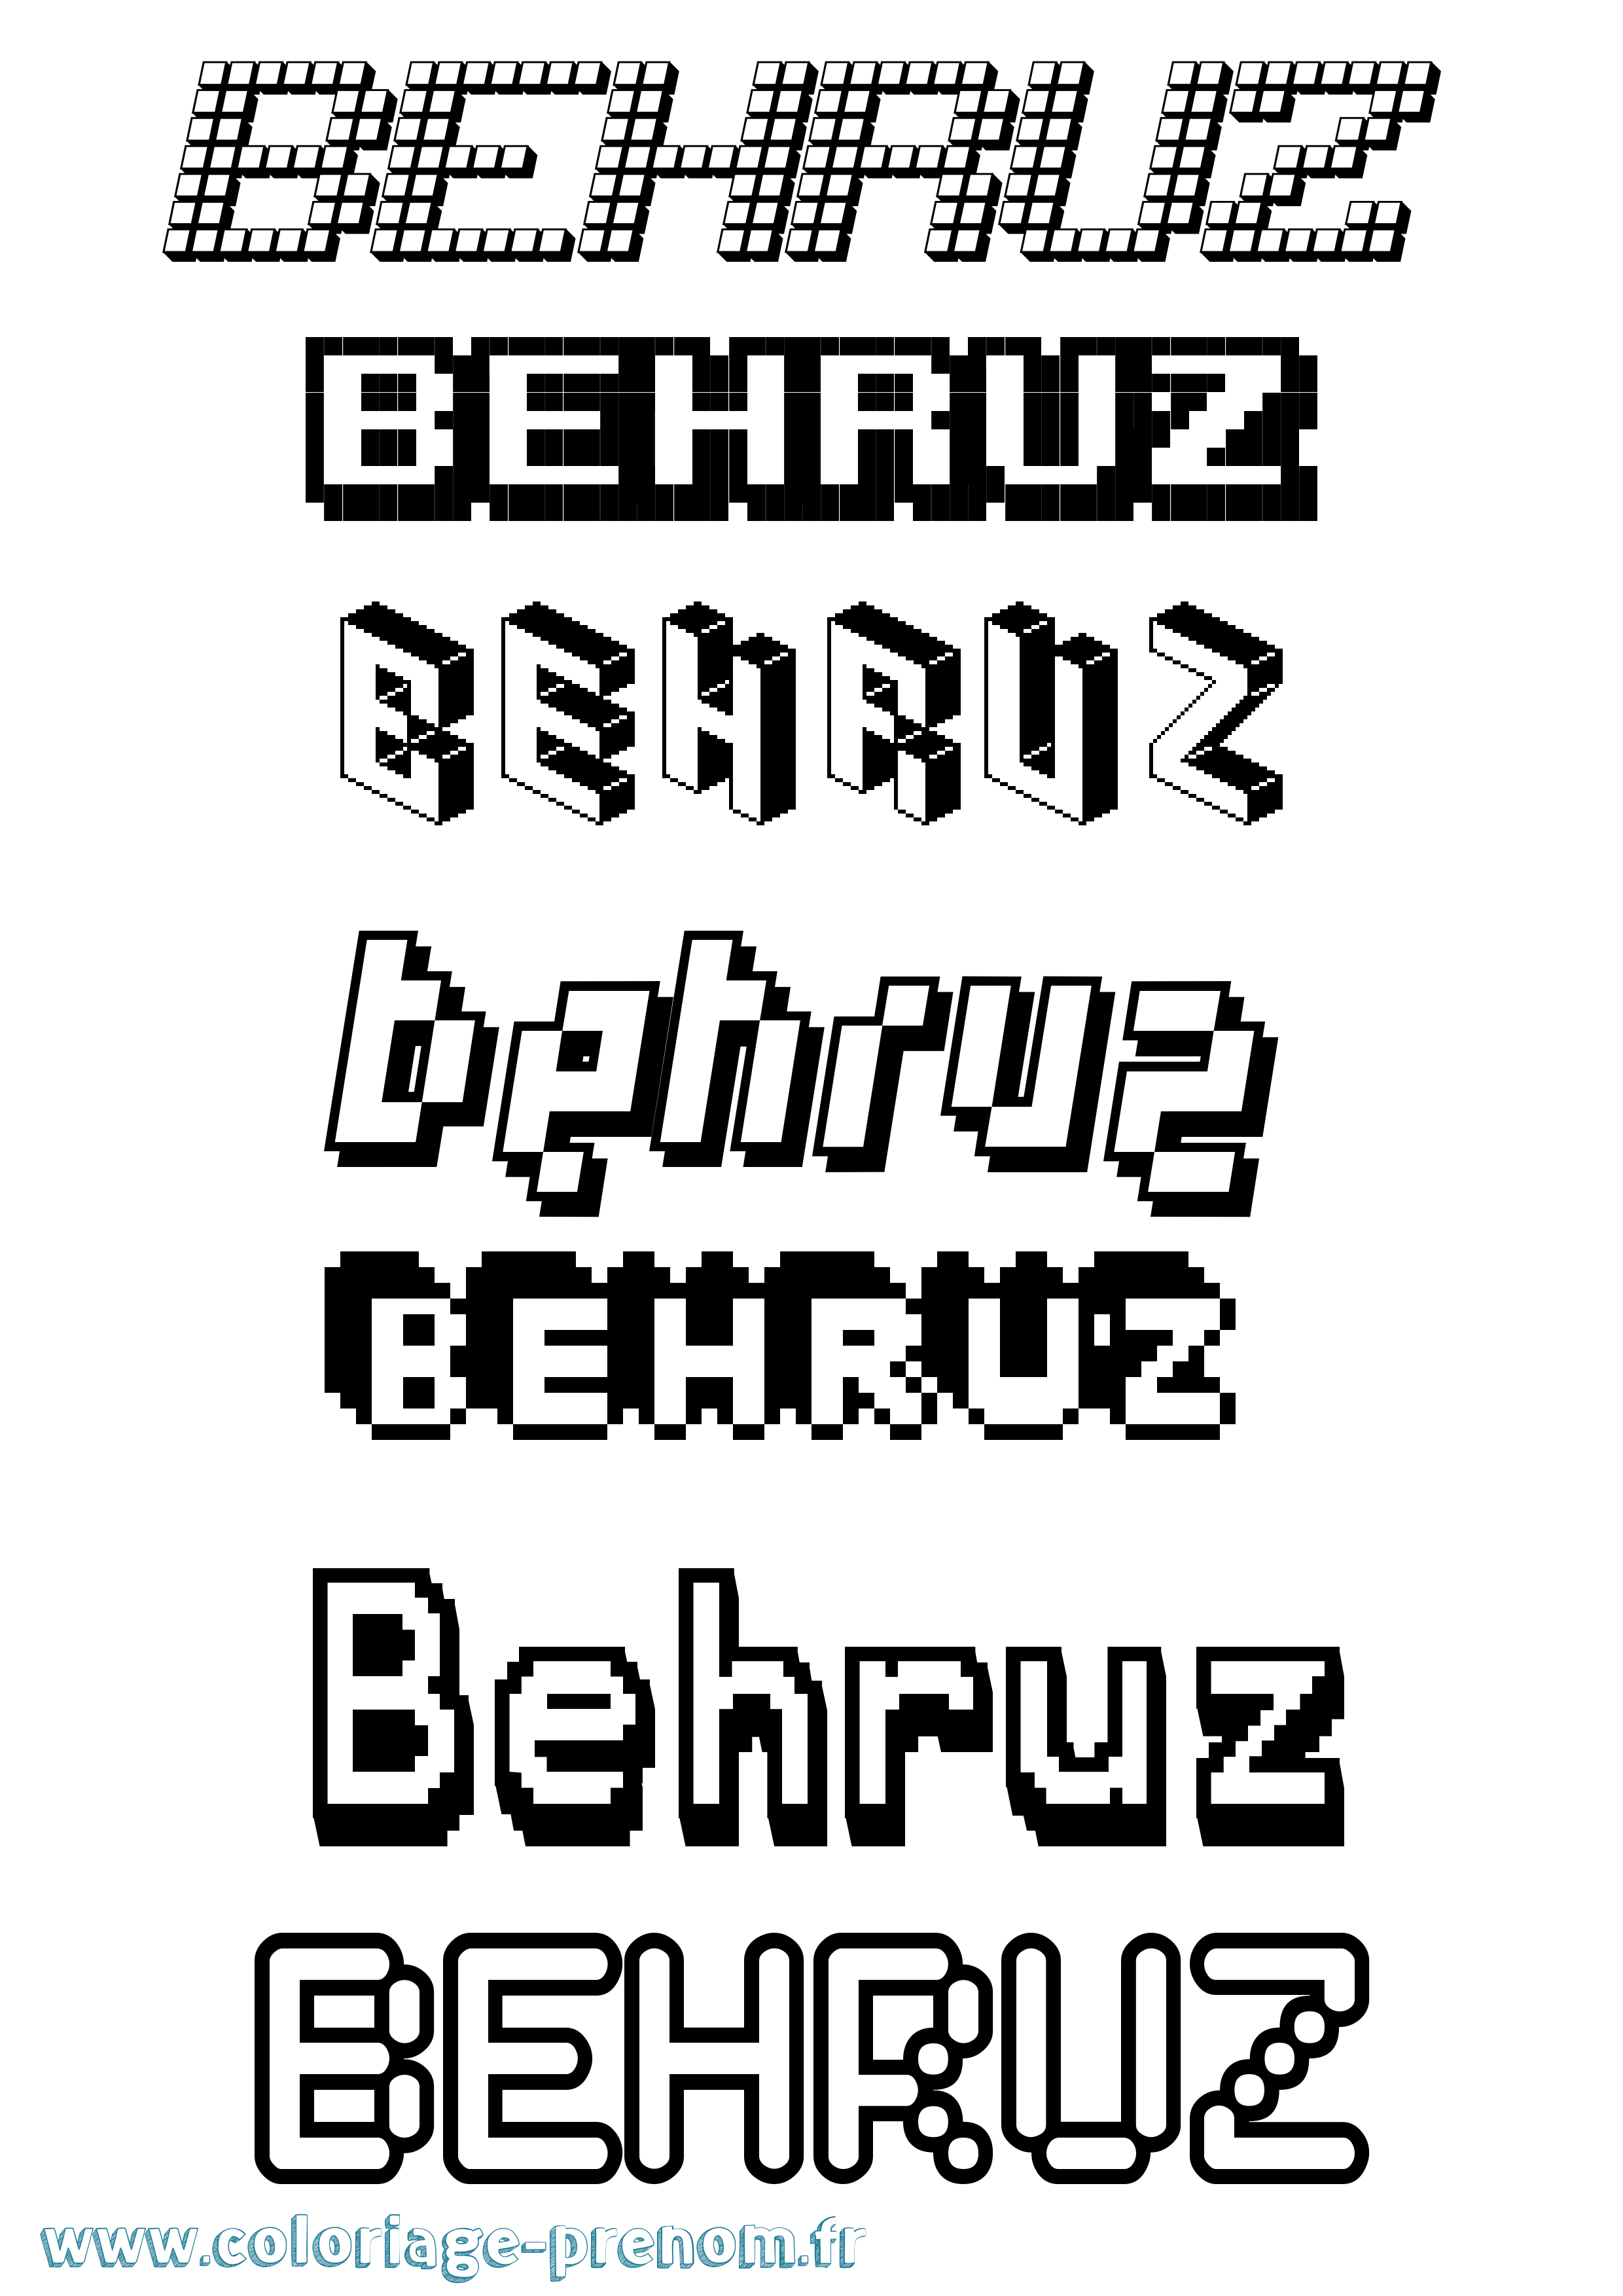 Coloriage prénom Behruz Pixel